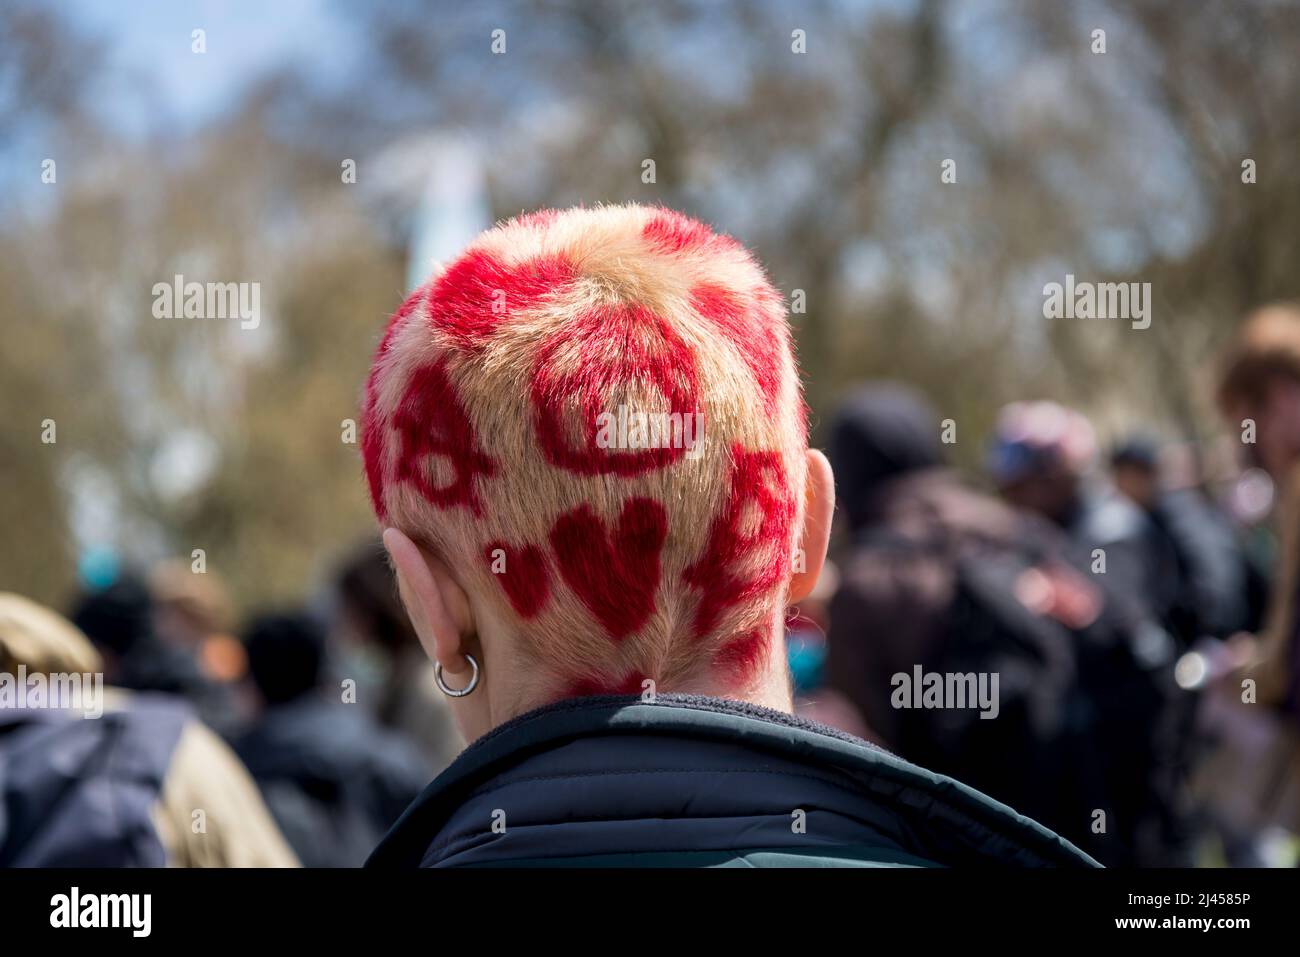 Hinterkopf einer jungen Frau mit gebleichtem Haar und roten Herzen und Anarchesymbolen, bei einem Extinction Rebellion Protest, London, England, Großbritannien Stockfoto